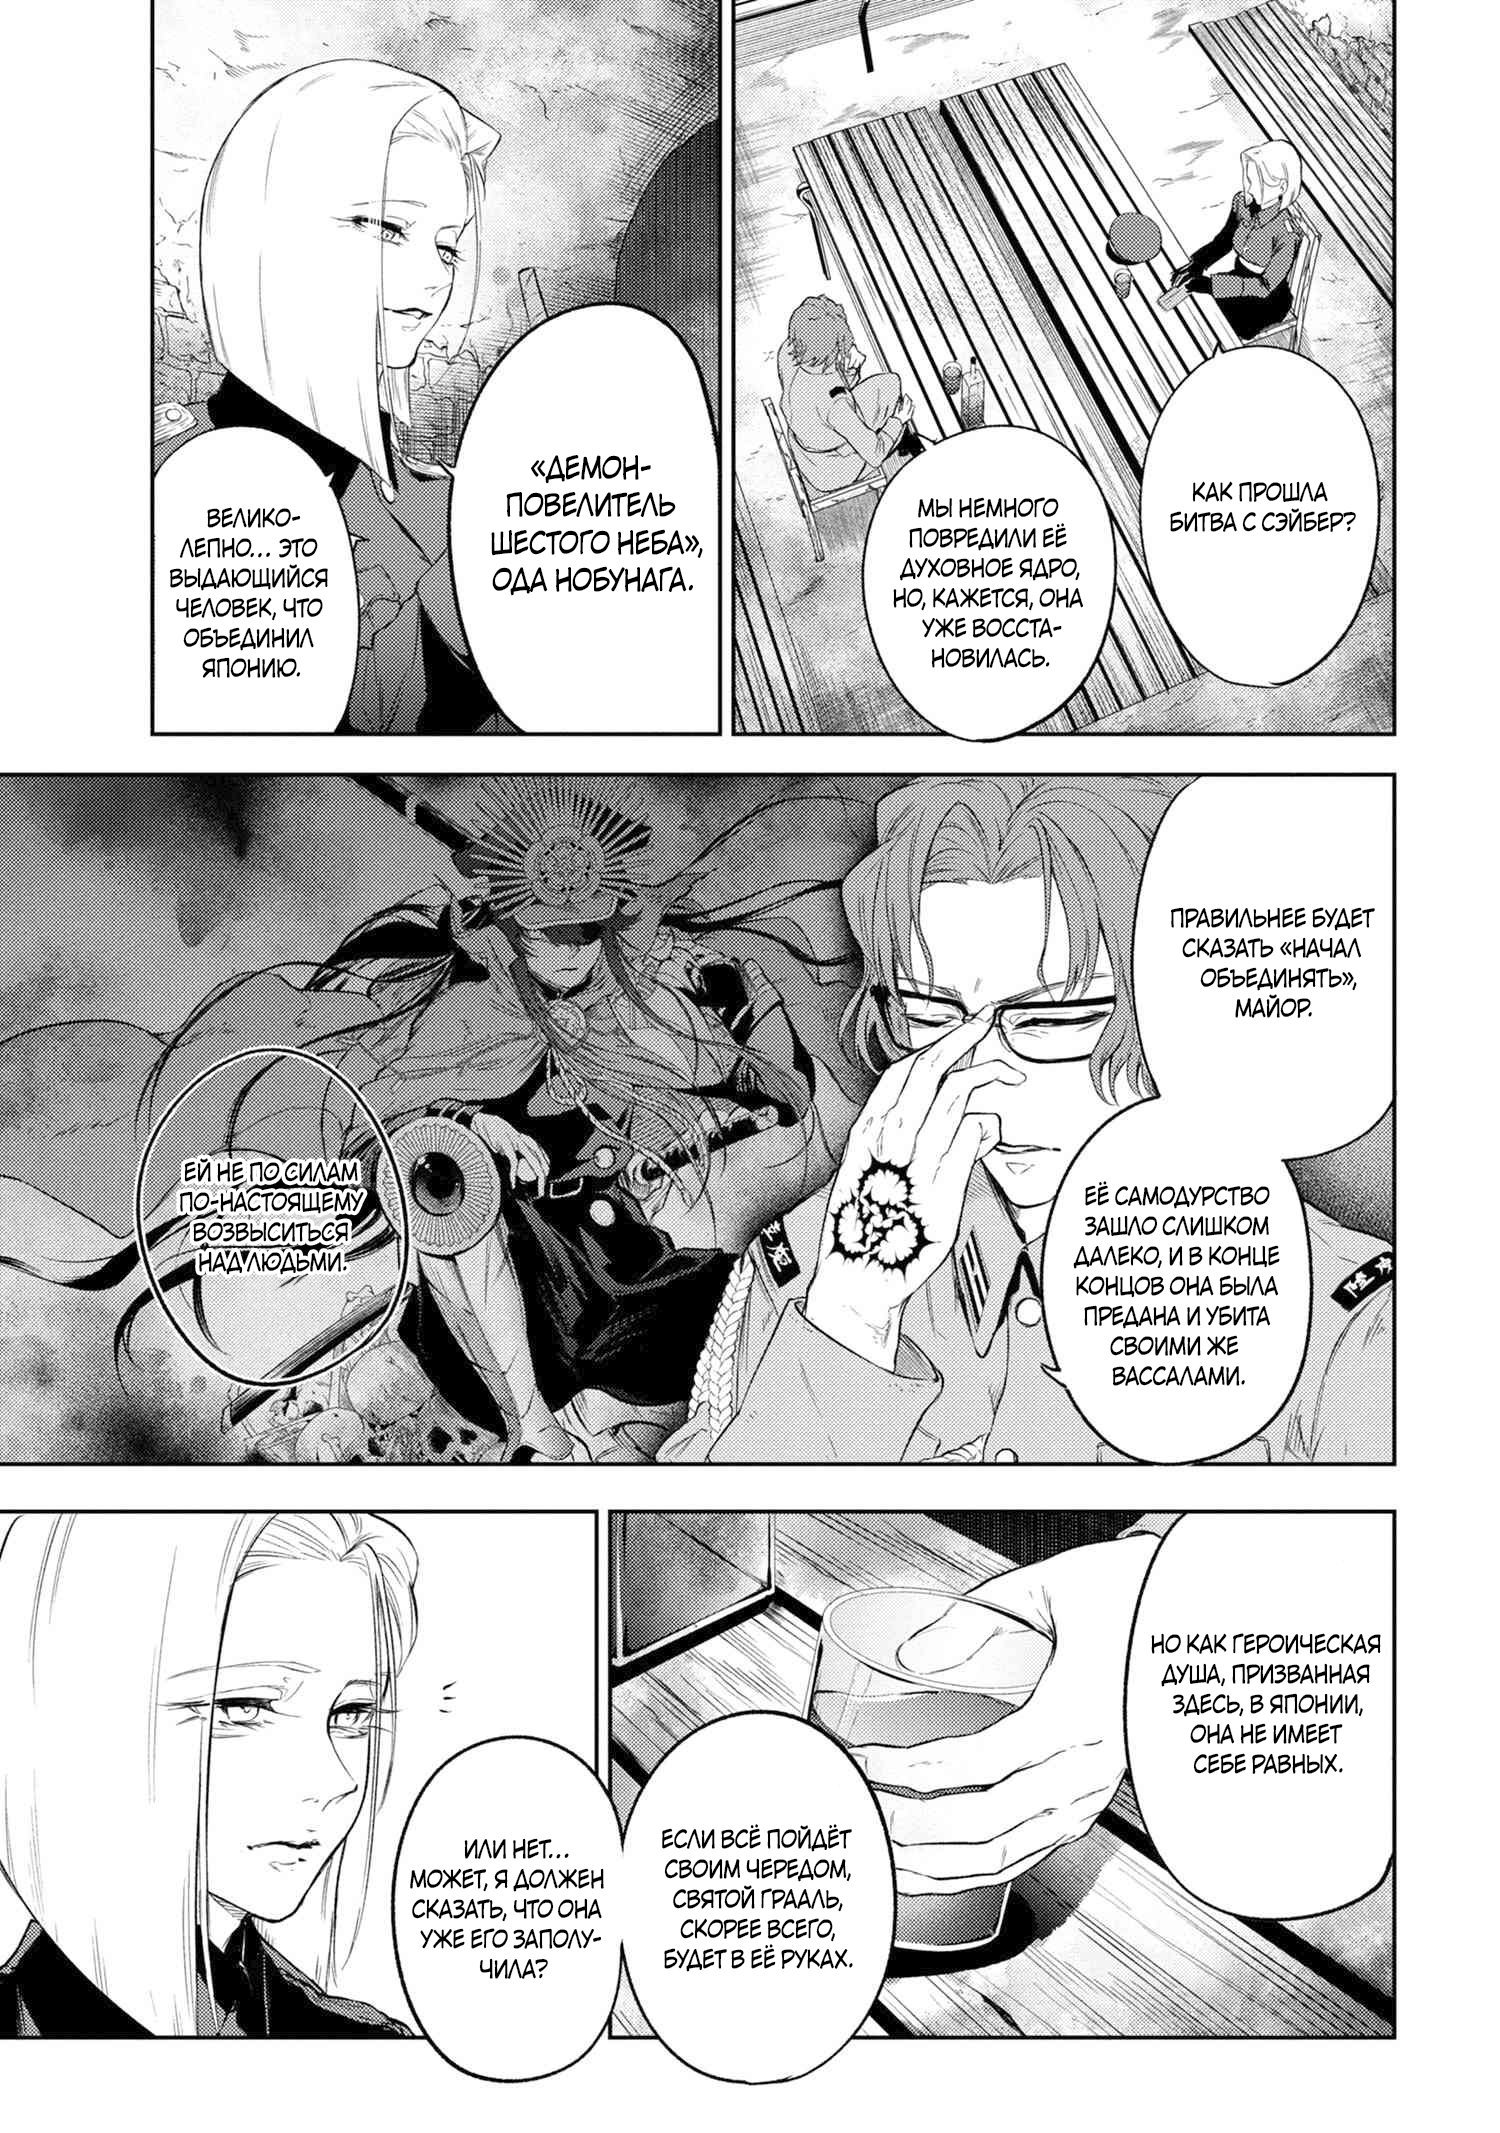 Манга Fate/type Redline: Предание о Граале в имперской столице - Глава 17 Страница 6